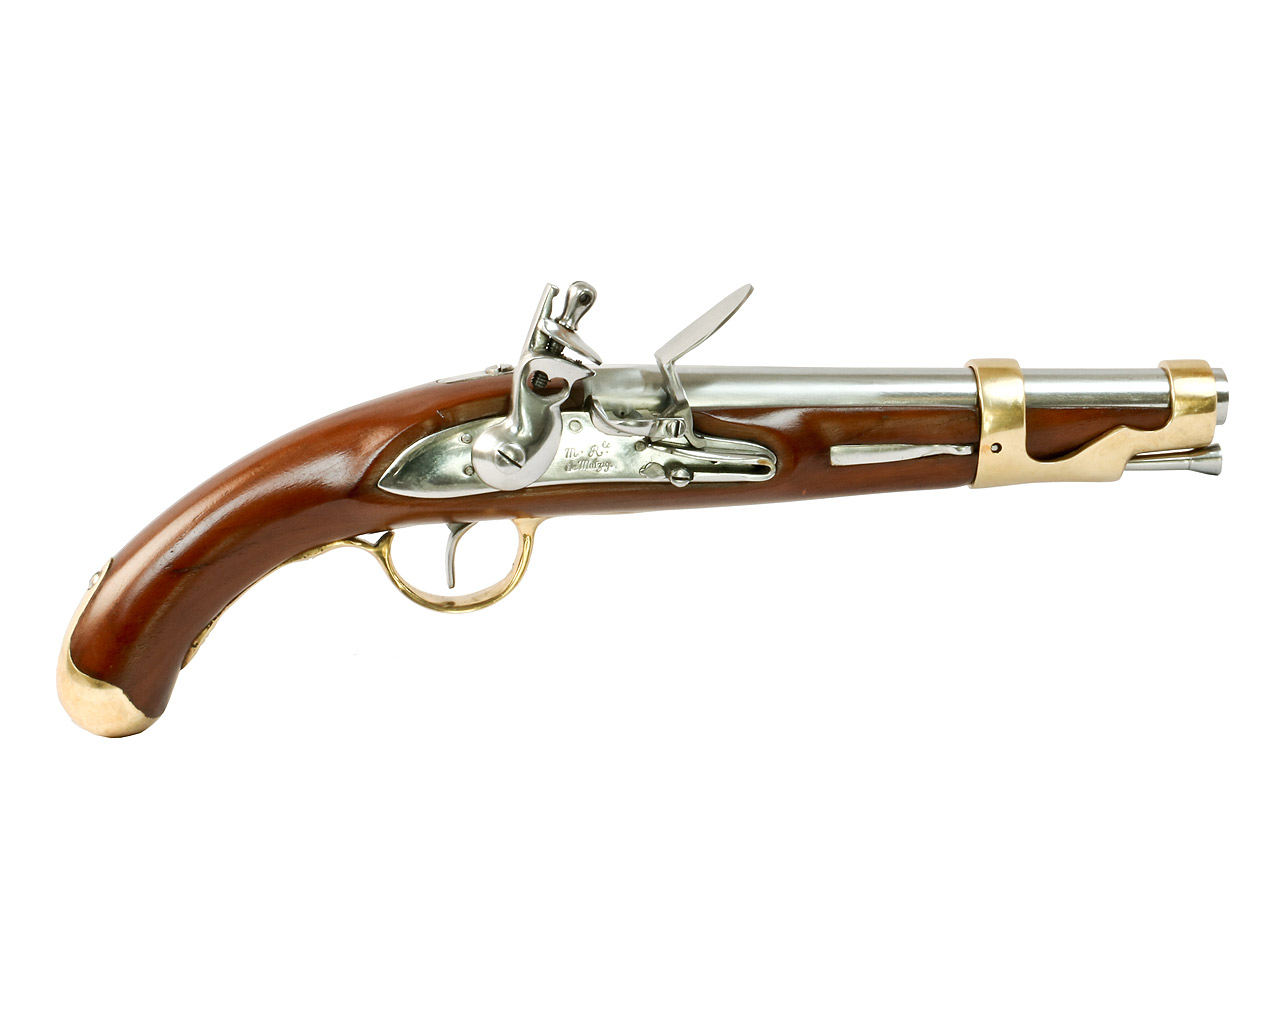 Vorderlader Steinschlosspistole French 1766, Kavalleriepistole, Kaliber .69 bzw. 17,6 mm (P18)